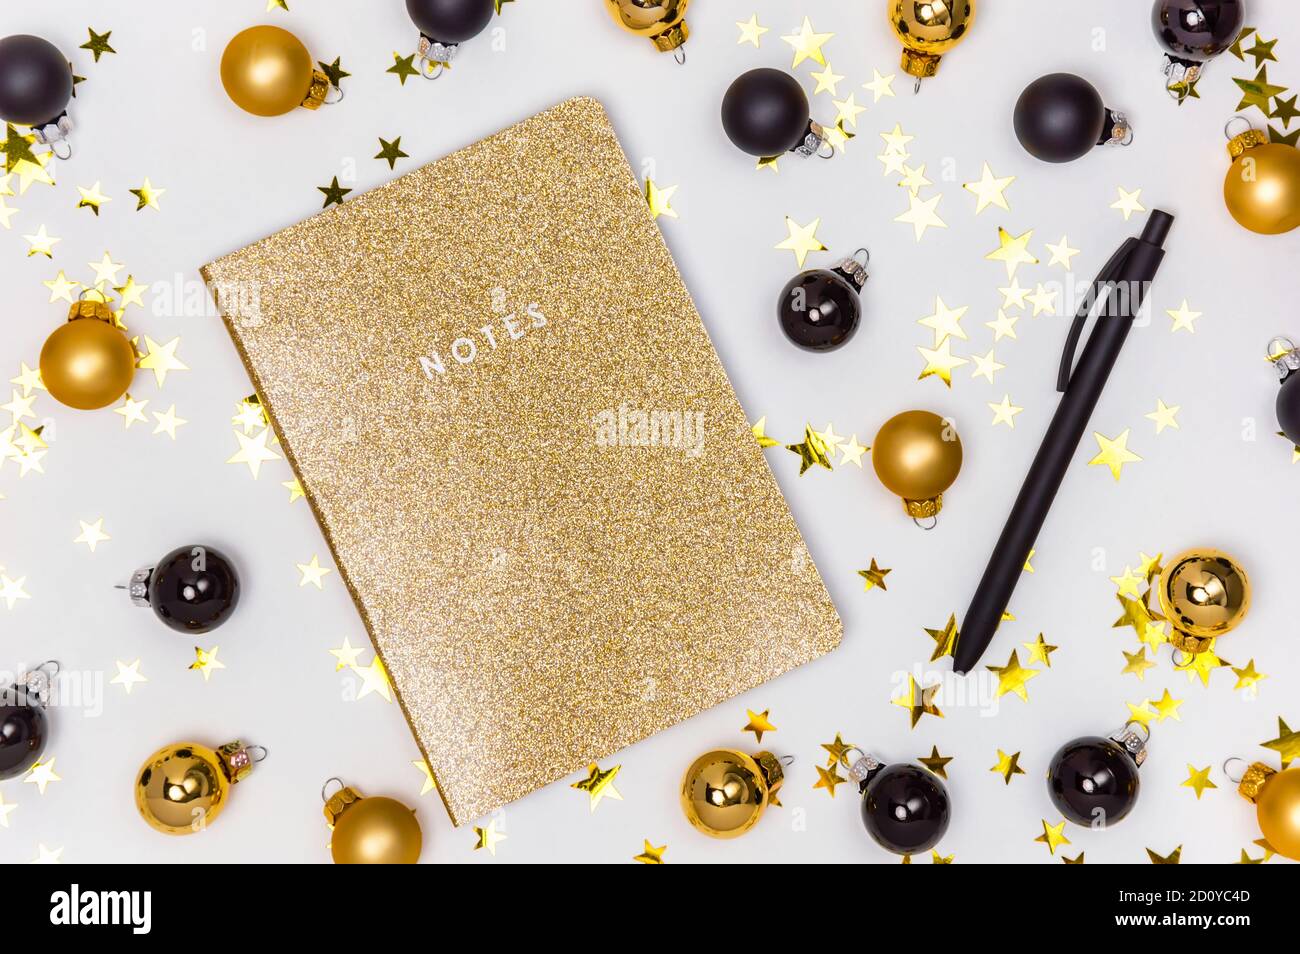 Carnet doré avec couverture scintillante, boules de Noël dorées et noires, boules et étoiles confettis. Bilan de l'année, liste de souhaits, résolutions du nouvel an Banque D'Images